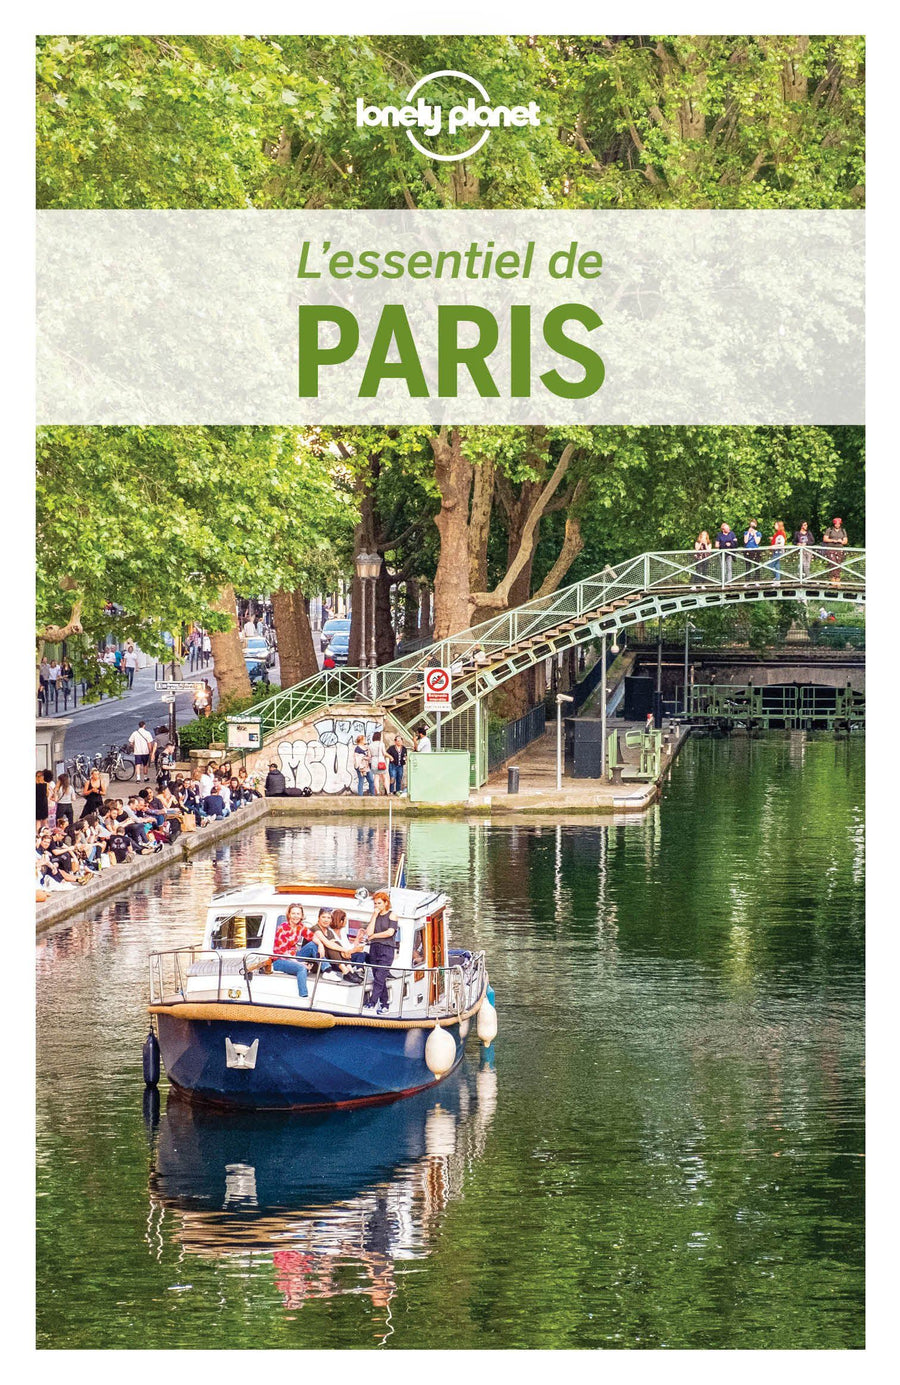 Guide de voyage - L'essentiel de Paris - Édition 2020 | Lonely Planet guide de voyage Lonely Planet 